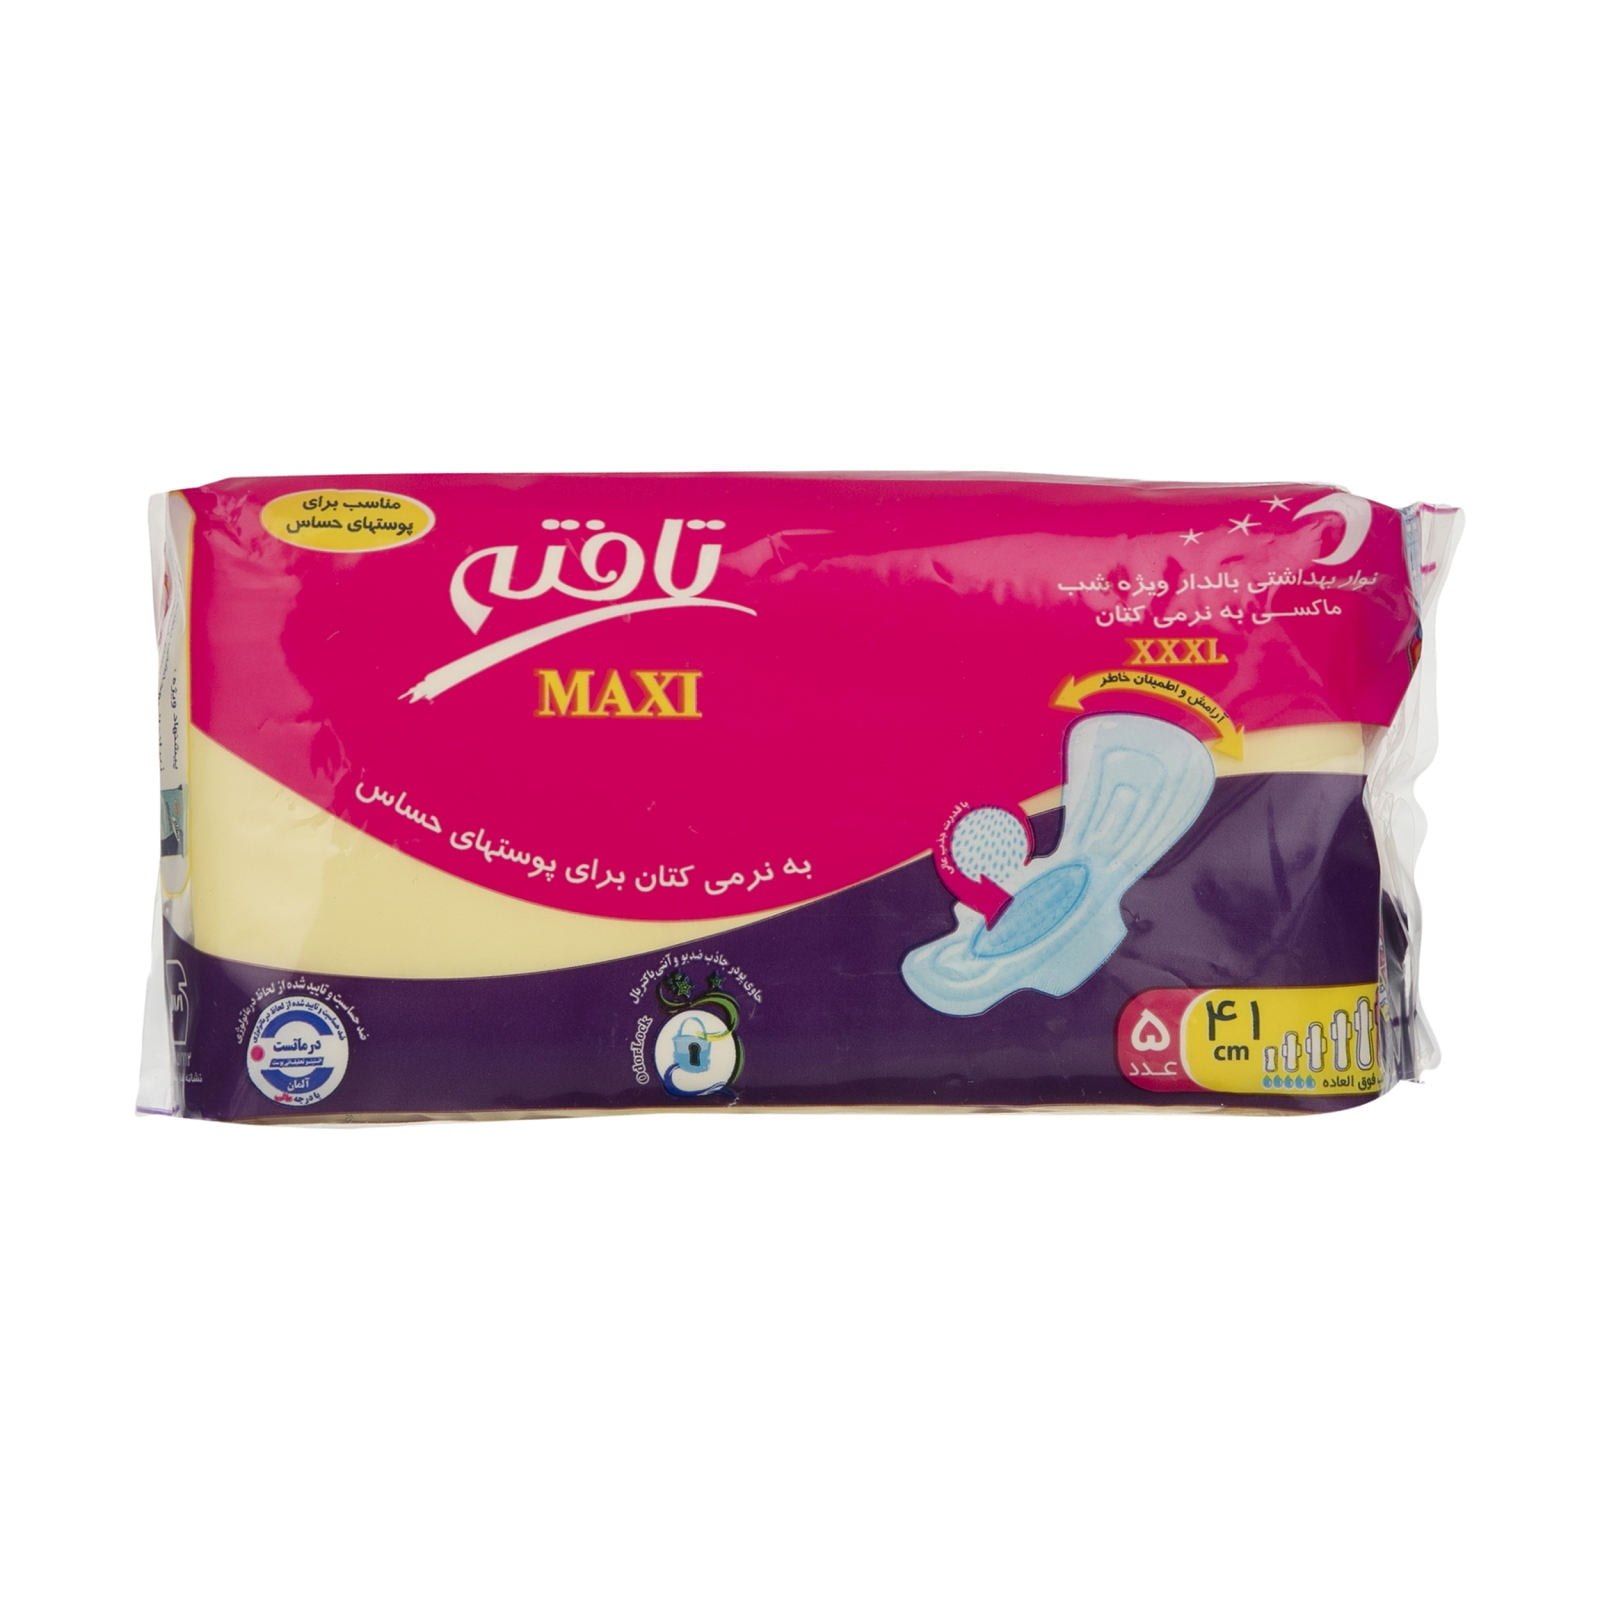 نوار بهداشتی بالدار مدل Maxi ویژه شب تافته بسته 5 عددی Tafte Maxi XXXL Night Sanitary Pad Pack of 5